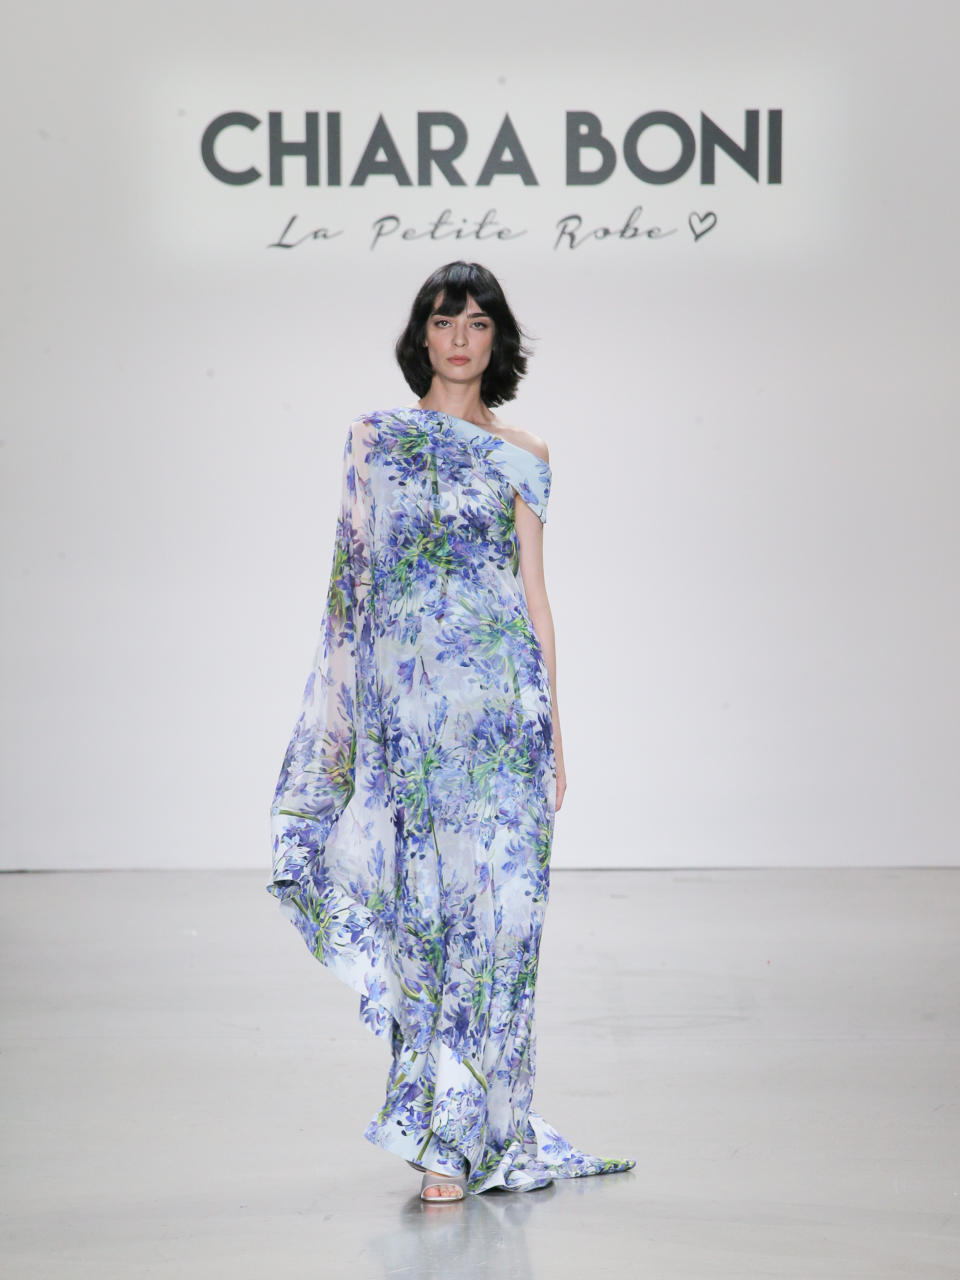 wearing Chiara Boni